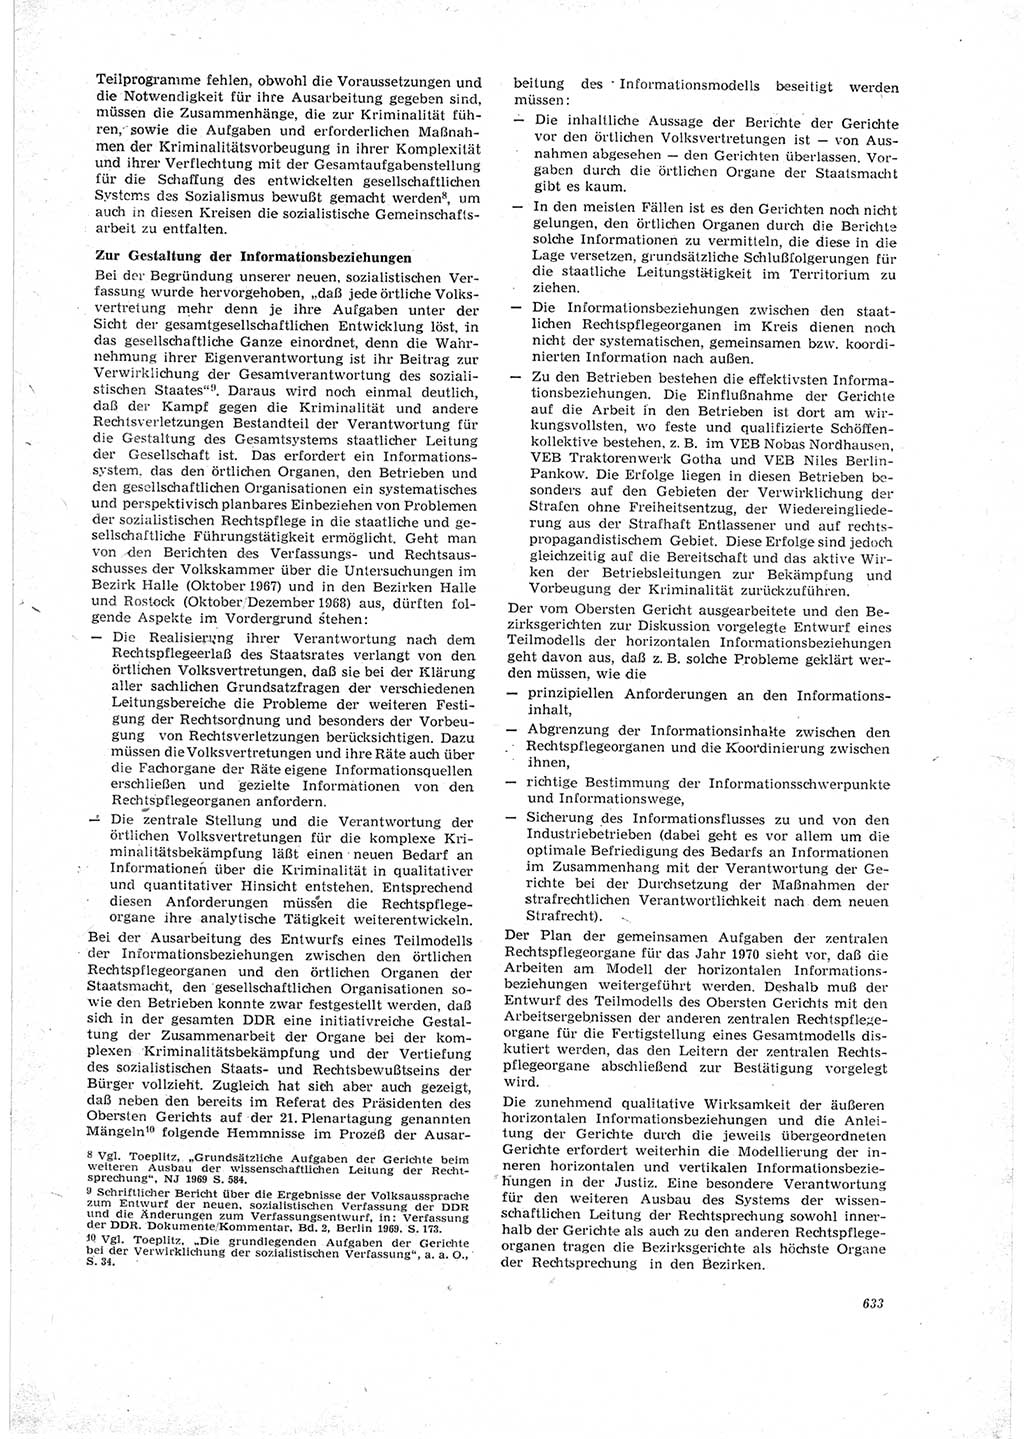 Neue Justiz (NJ), Zeitschrift für Recht und Rechtswissenschaft [Deutsche Demokratische Republik (DDR)], 23. Jahrgang 1969, Seite 633 (NJ DDR 1969, S. 633)